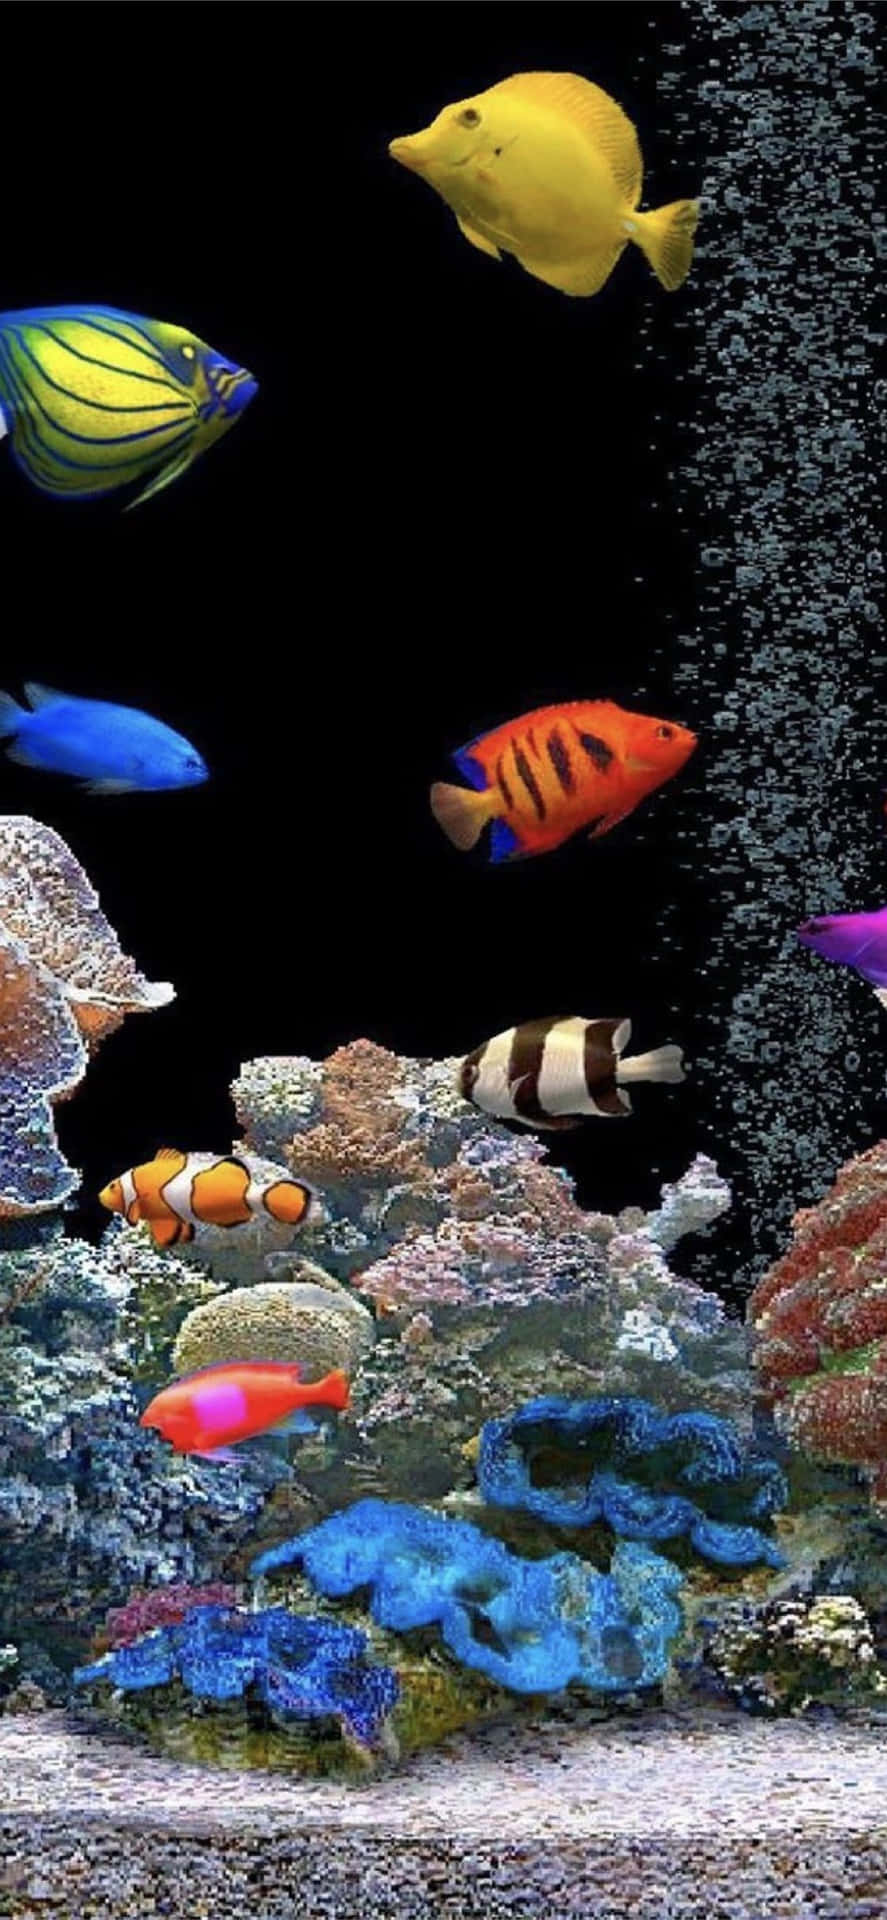 Genießeden Entspannenden Anblick Eines Faszinierenden Aquariums. Wallpaper